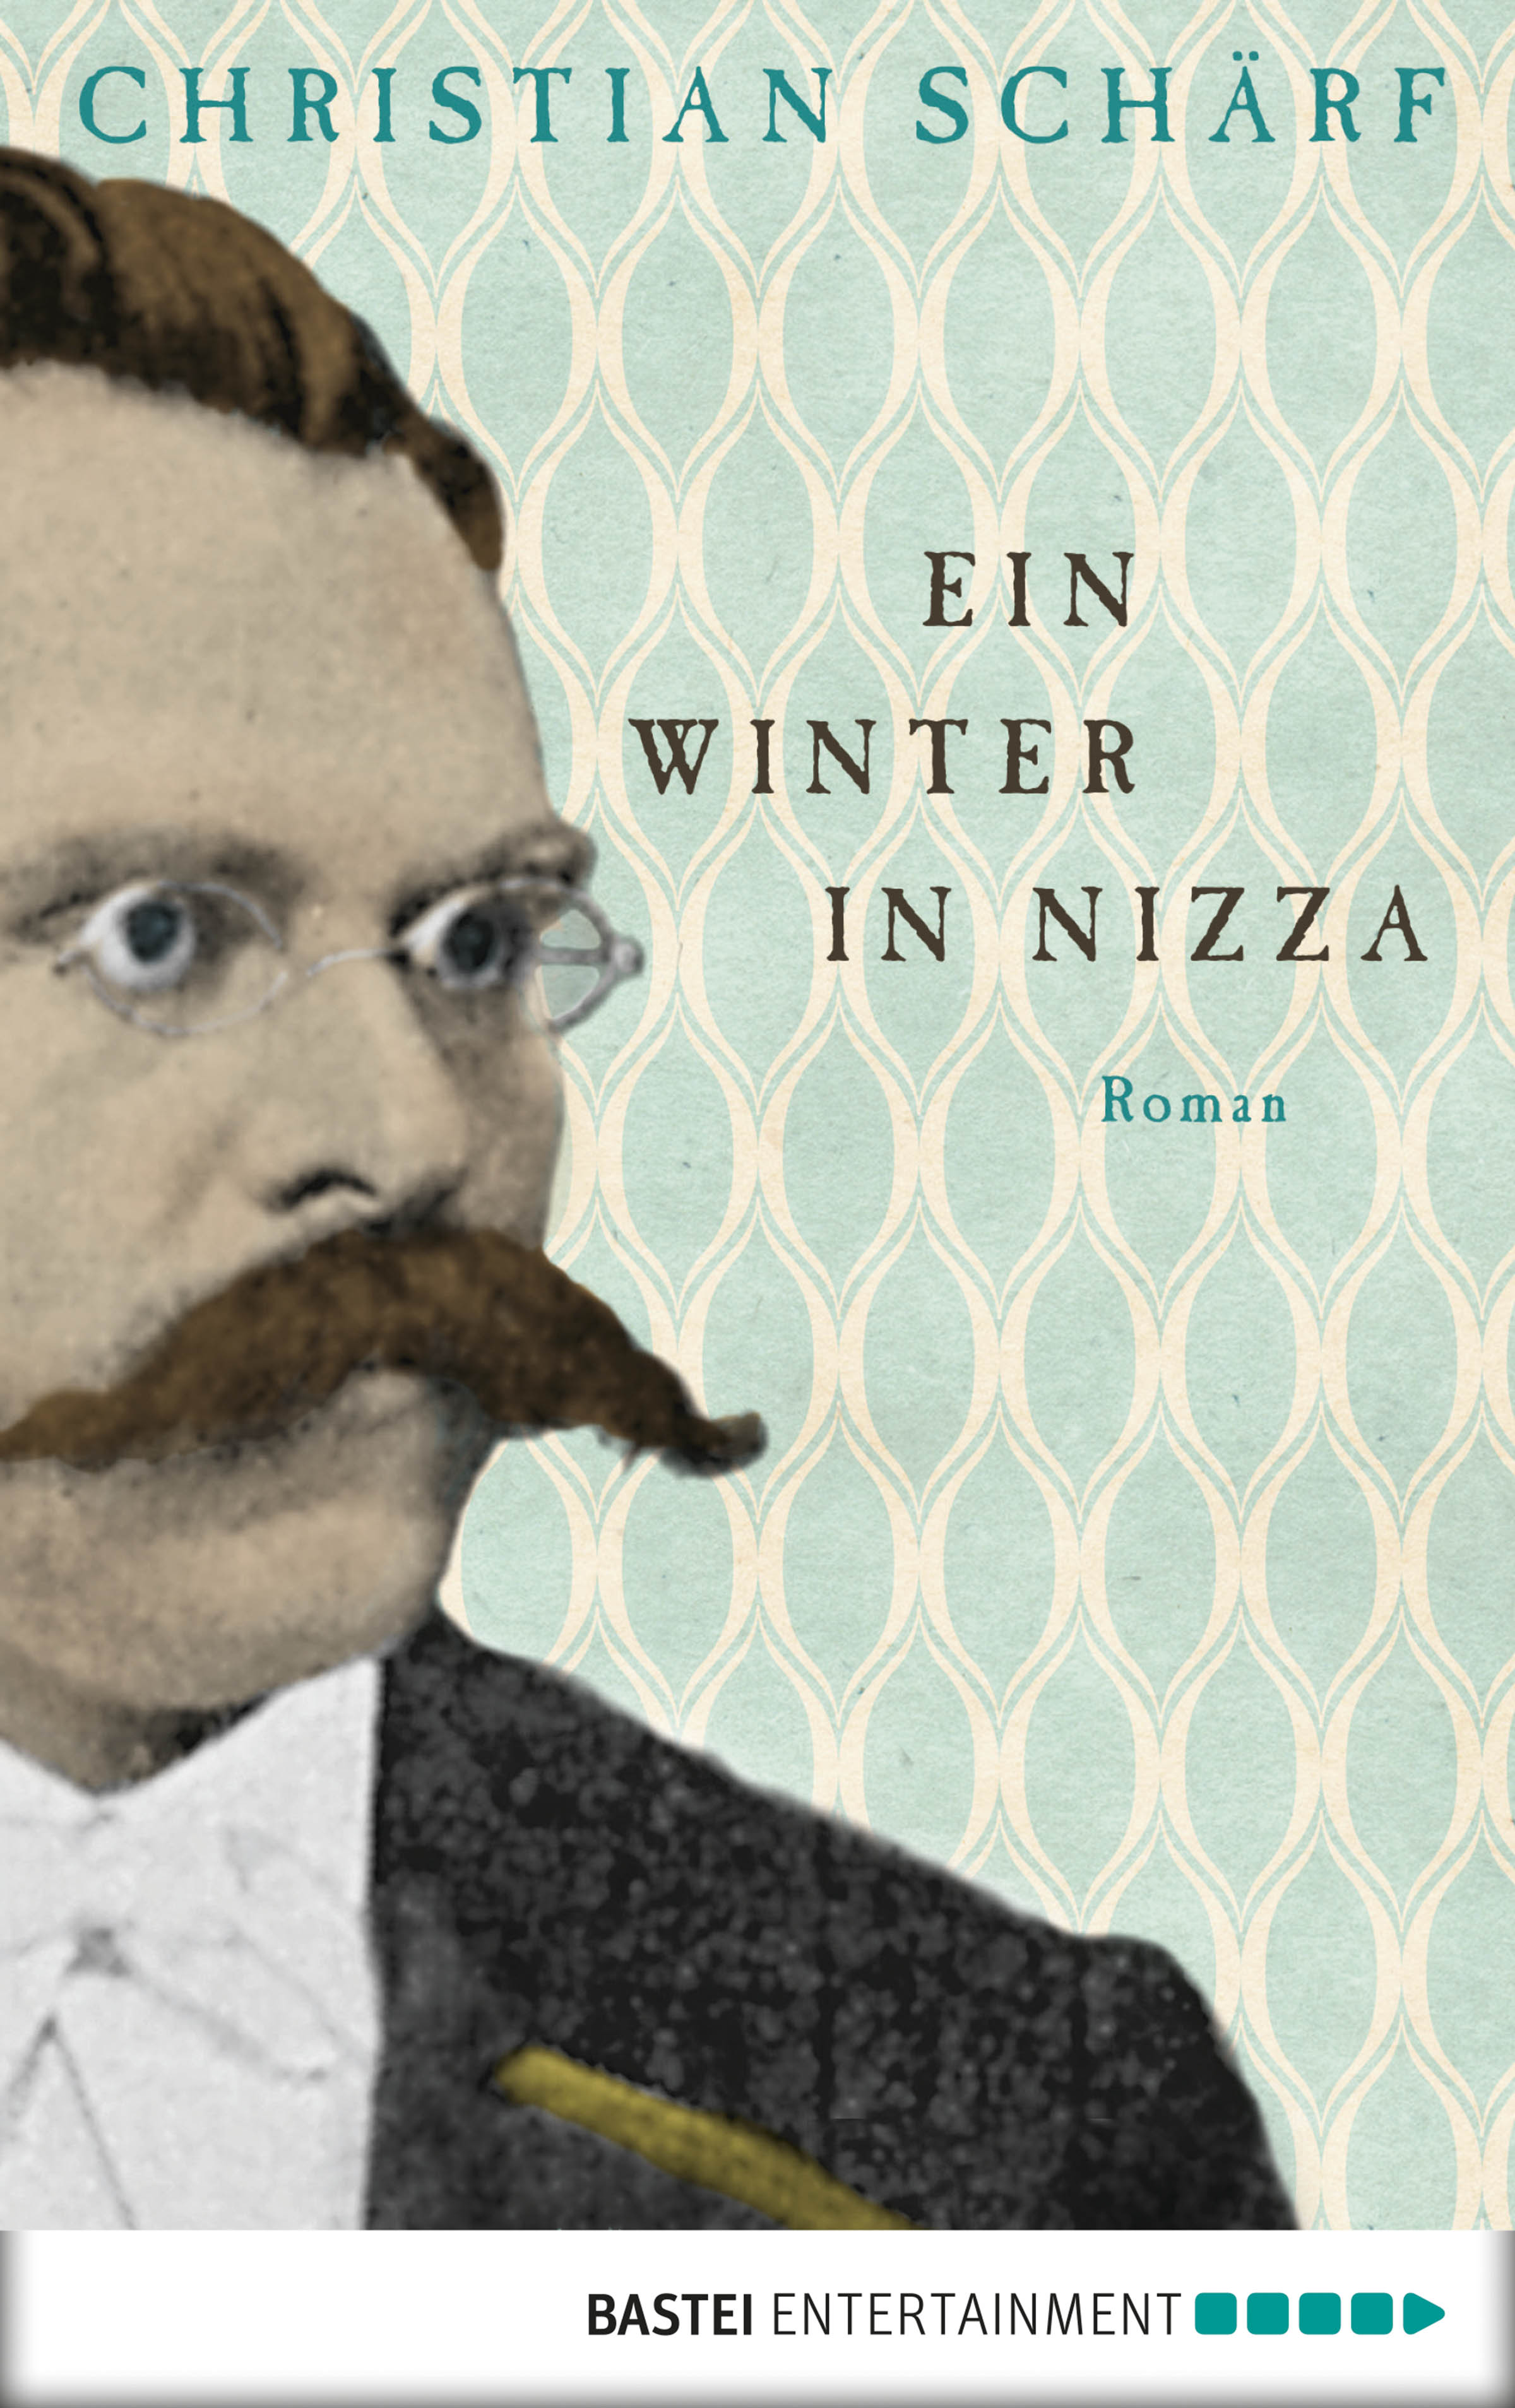 Ein Winter in Nizza (German language, 2014, Eichborn)